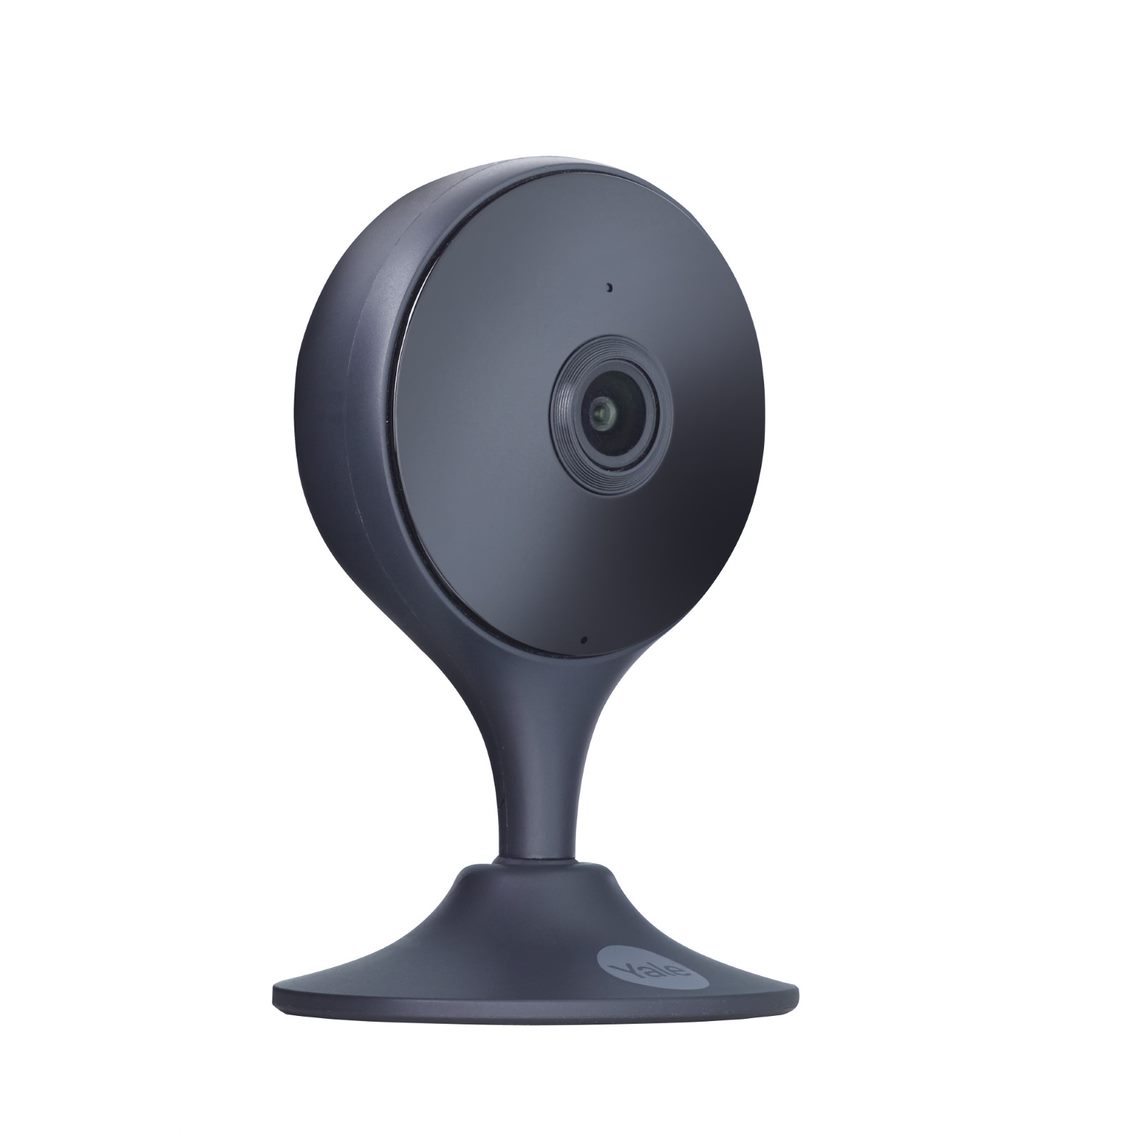 Garza Smart Design Cámara Inteligente de Vigilancia IP 720p HD WiFi para  Interiores